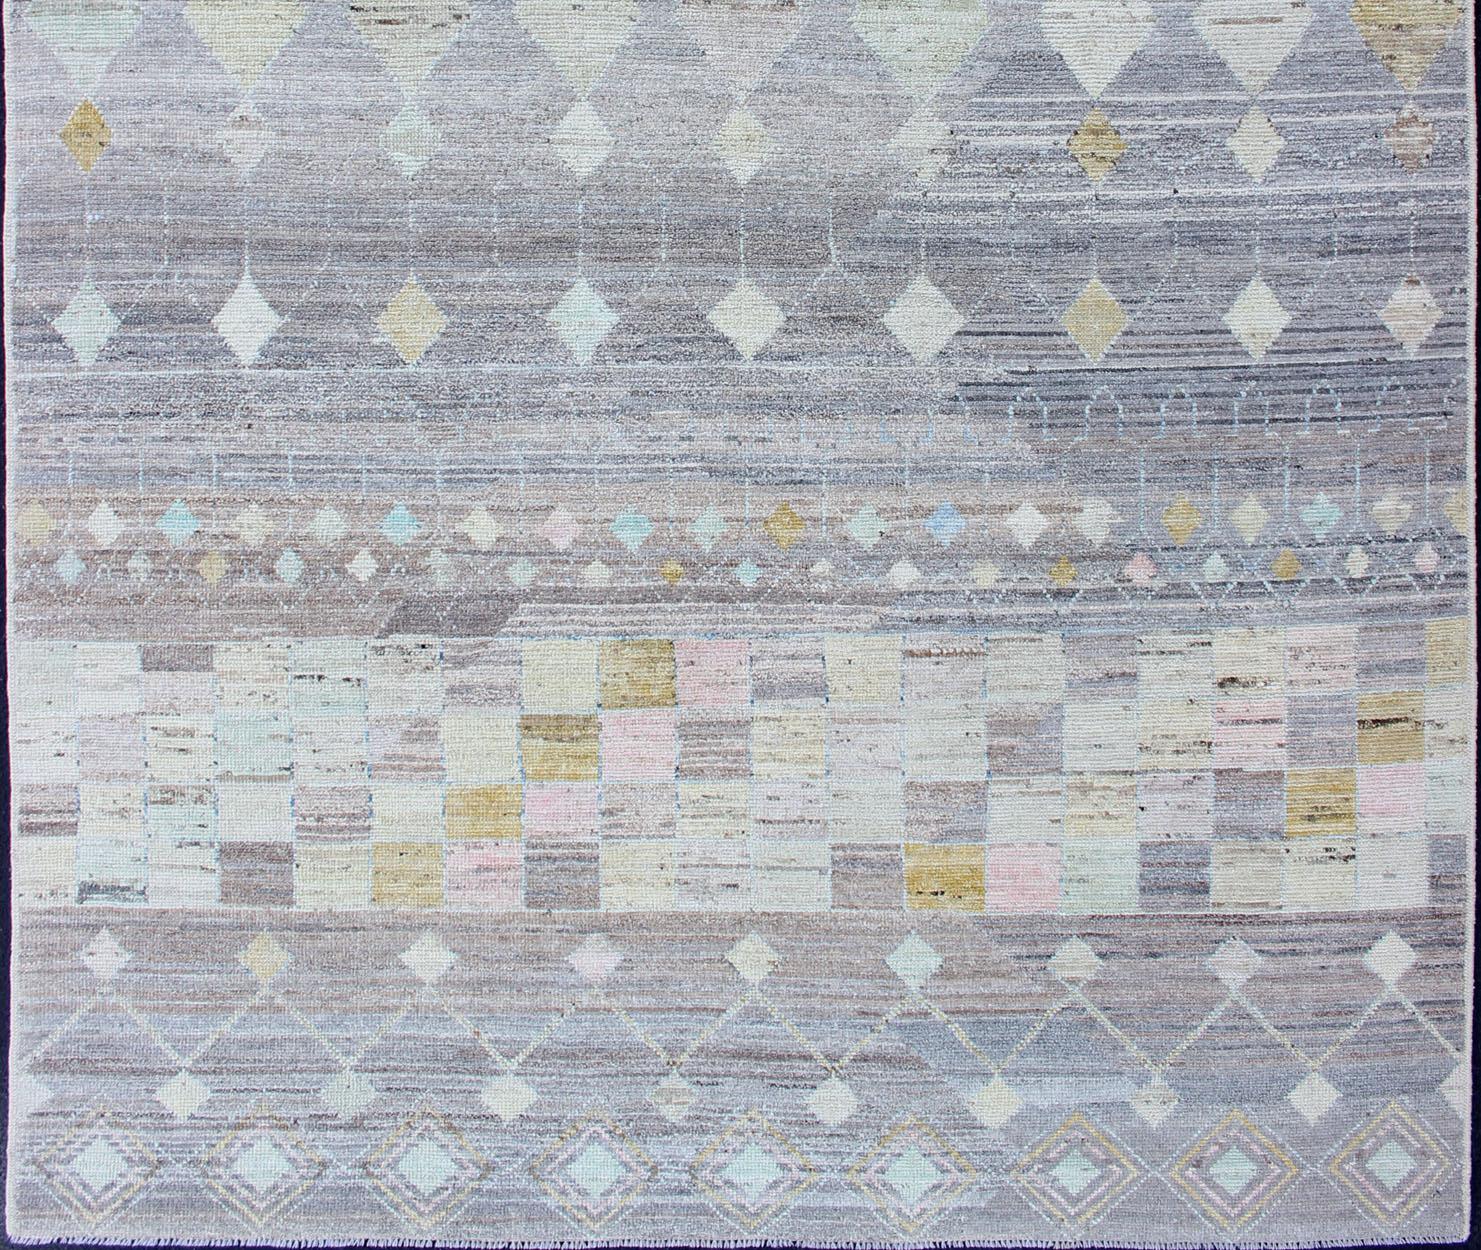 Tapis design moderne et décontracté avec des couleurs vives sur un fond neutre et gris, tapis AFG-33319, pays d'origine / type : Afghanistan / tribal marocain, décontracté moderne.

Le design de ce tapis empilé le rend parfait pour les intérieurs